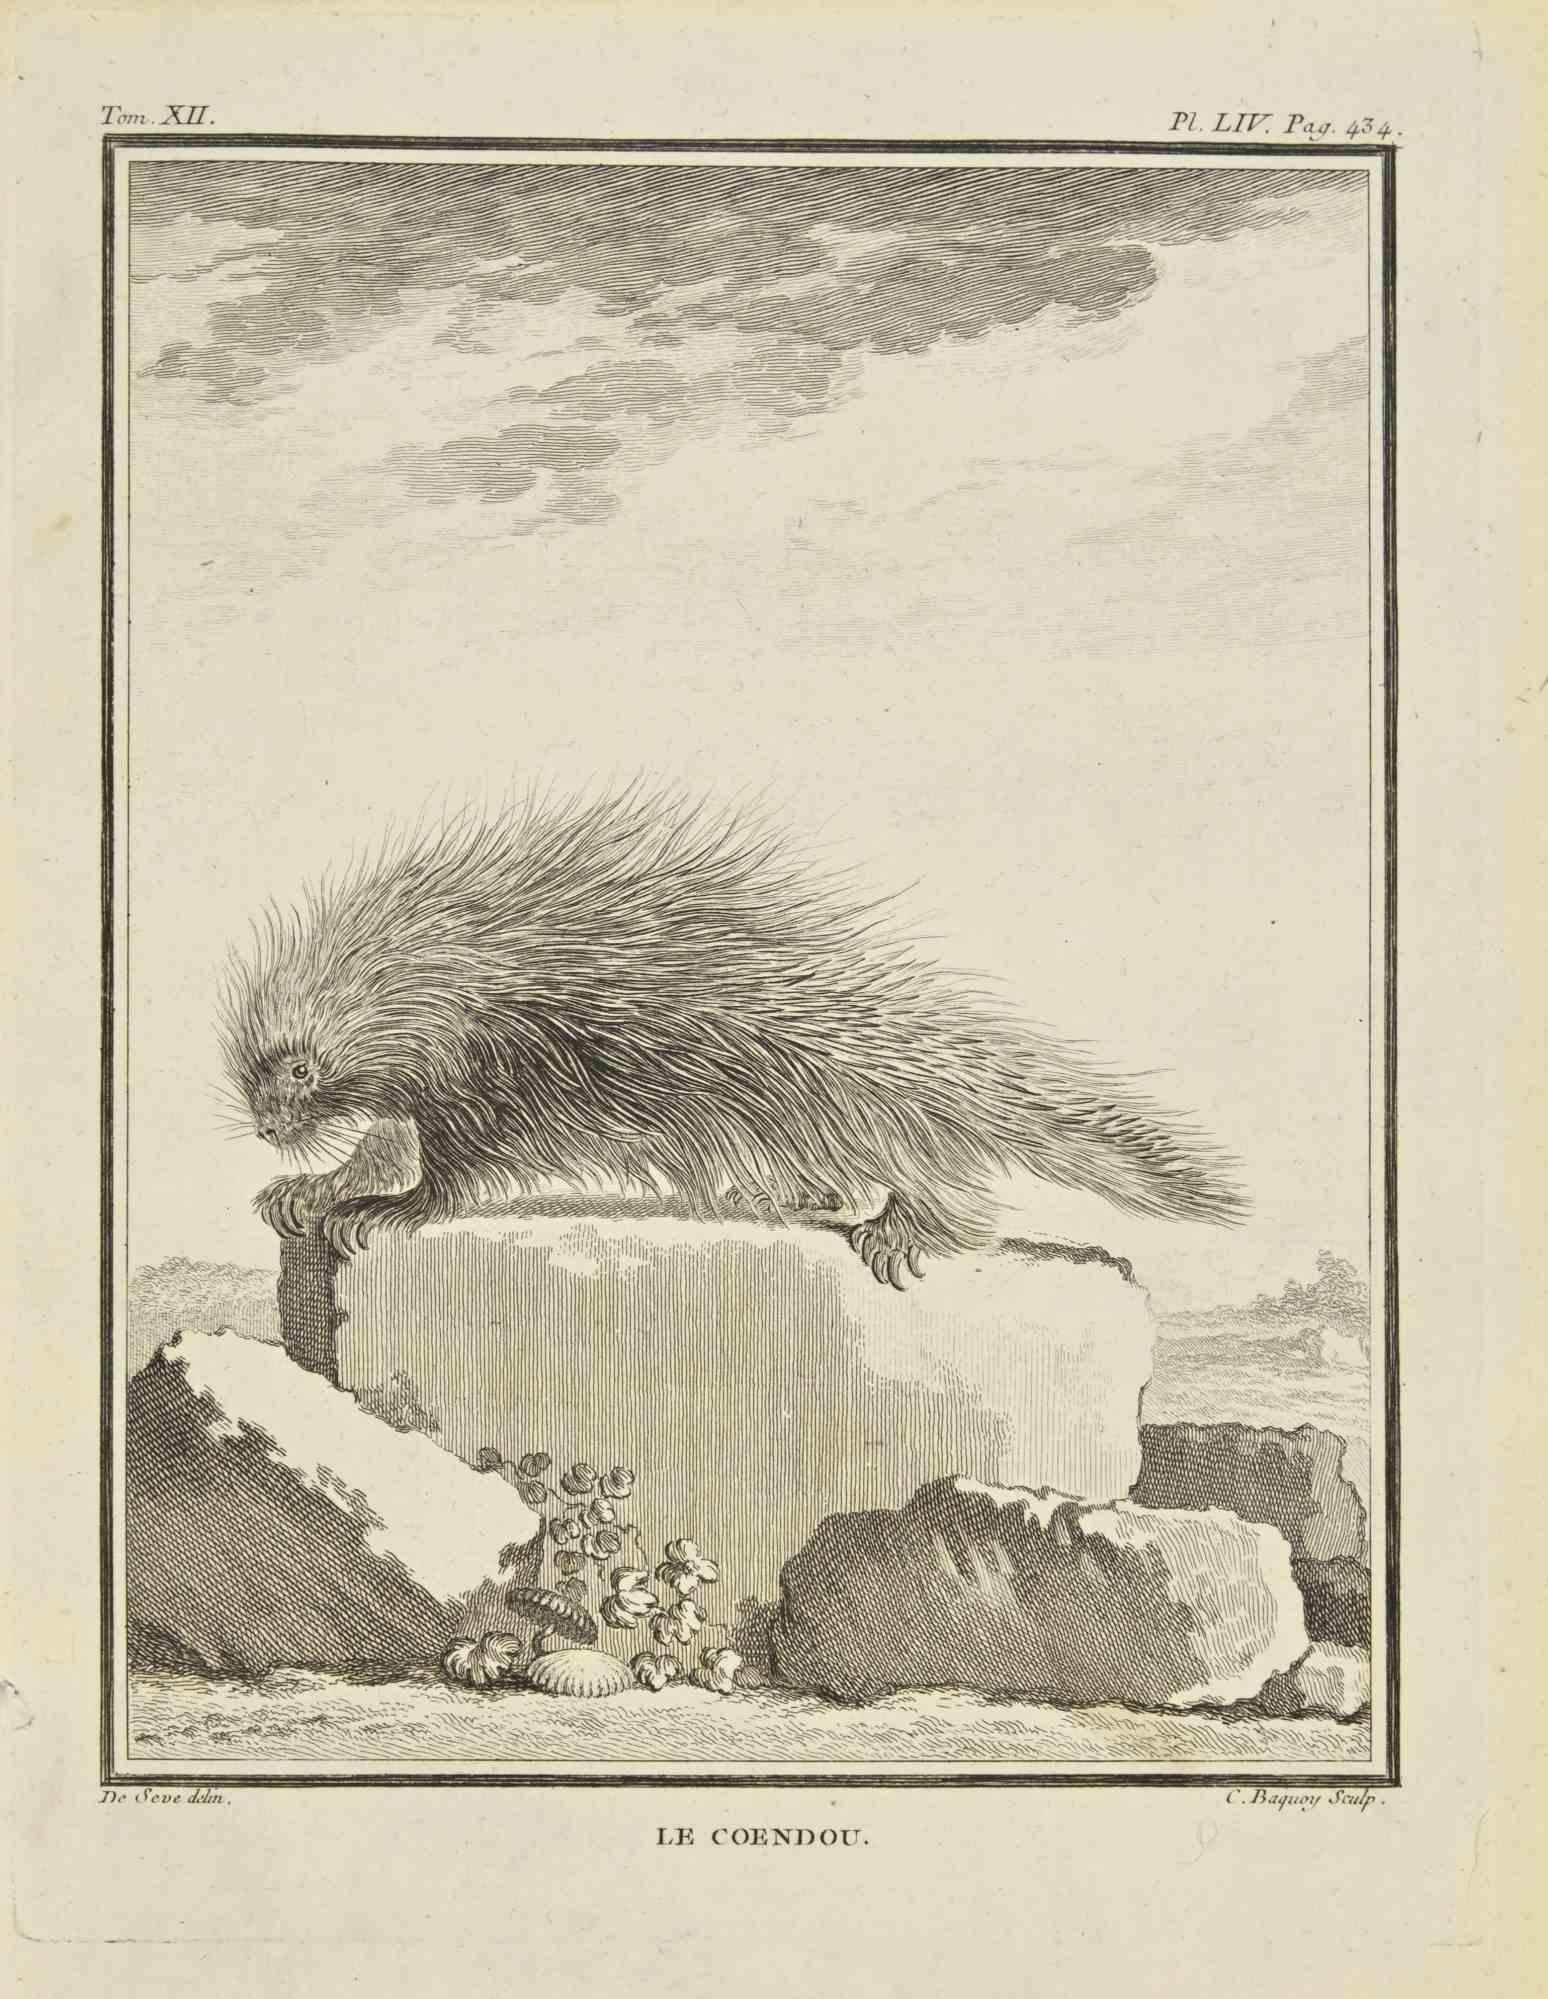 Le Coendou ist eine Radierung von Jean Charles Baquoy aus dem Jahr 1771.

Es gehört zu der Reihe "Histoire Naturelle de Buffon".

Die Signatur des Künstlers ist unten rechts eingraviert.

Gute Bedingungen